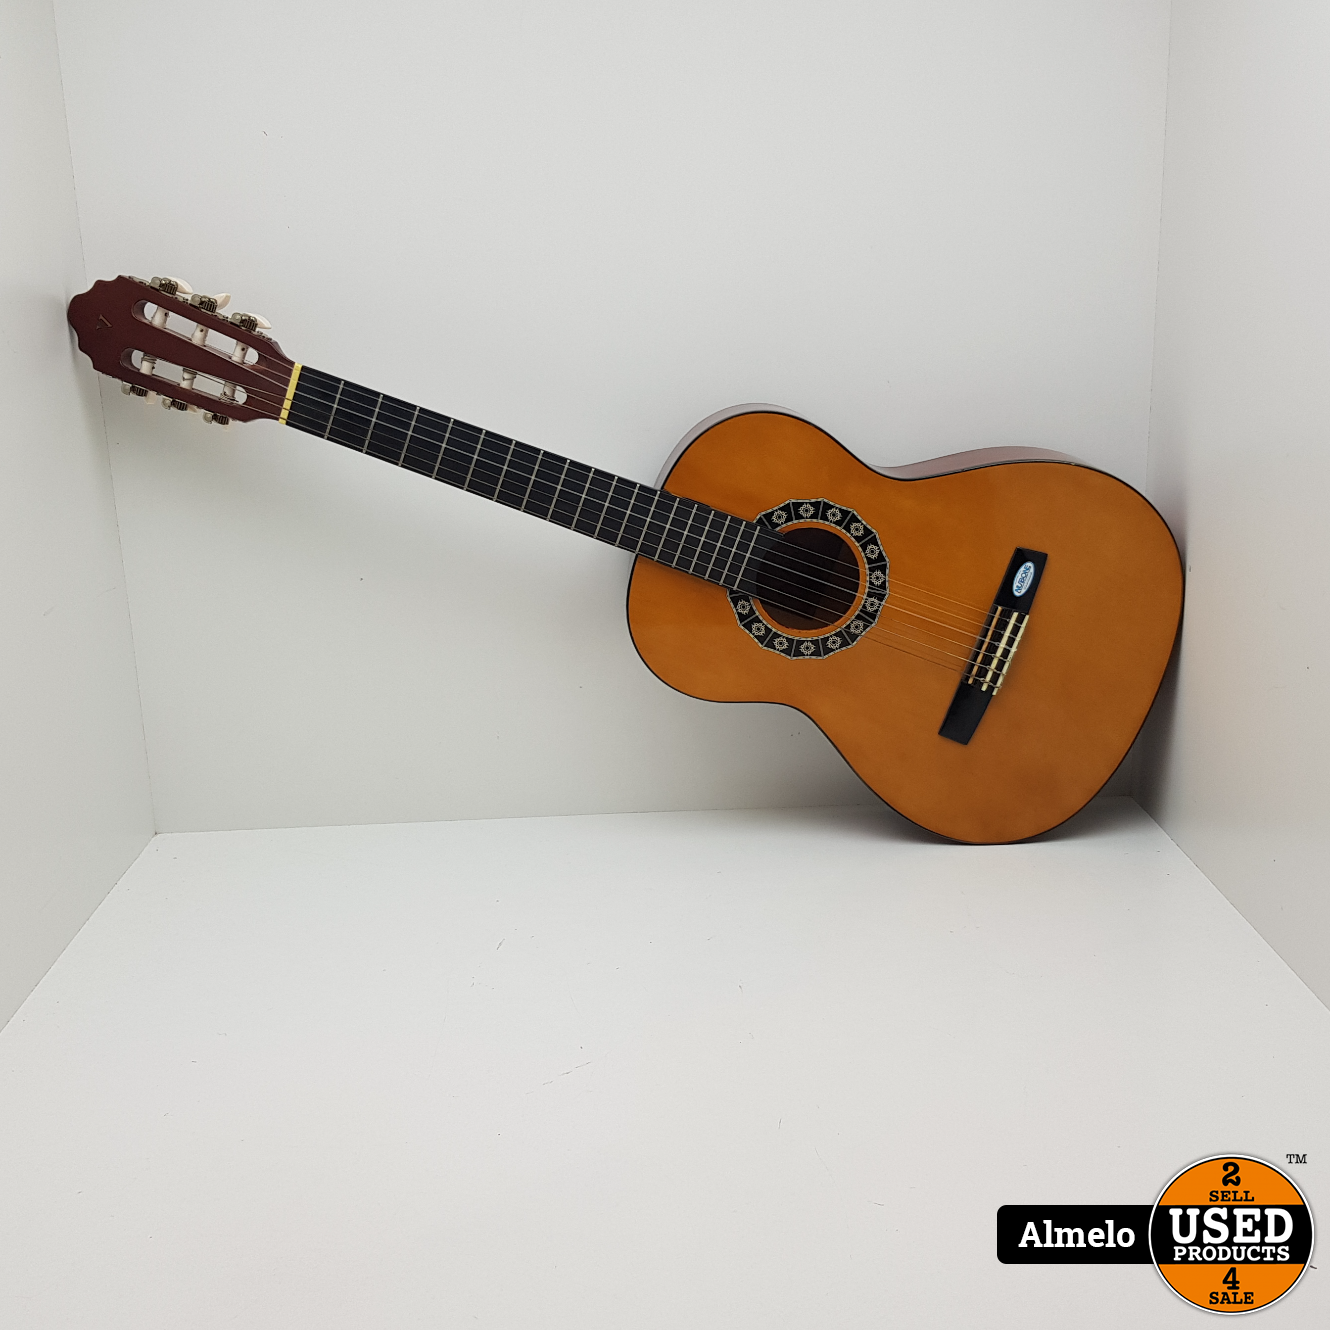 Refrein Uitvoeren Bermad Valencia 3/4 CG-IK34-na Classic Akoestische gitaar - Used Products Almelo